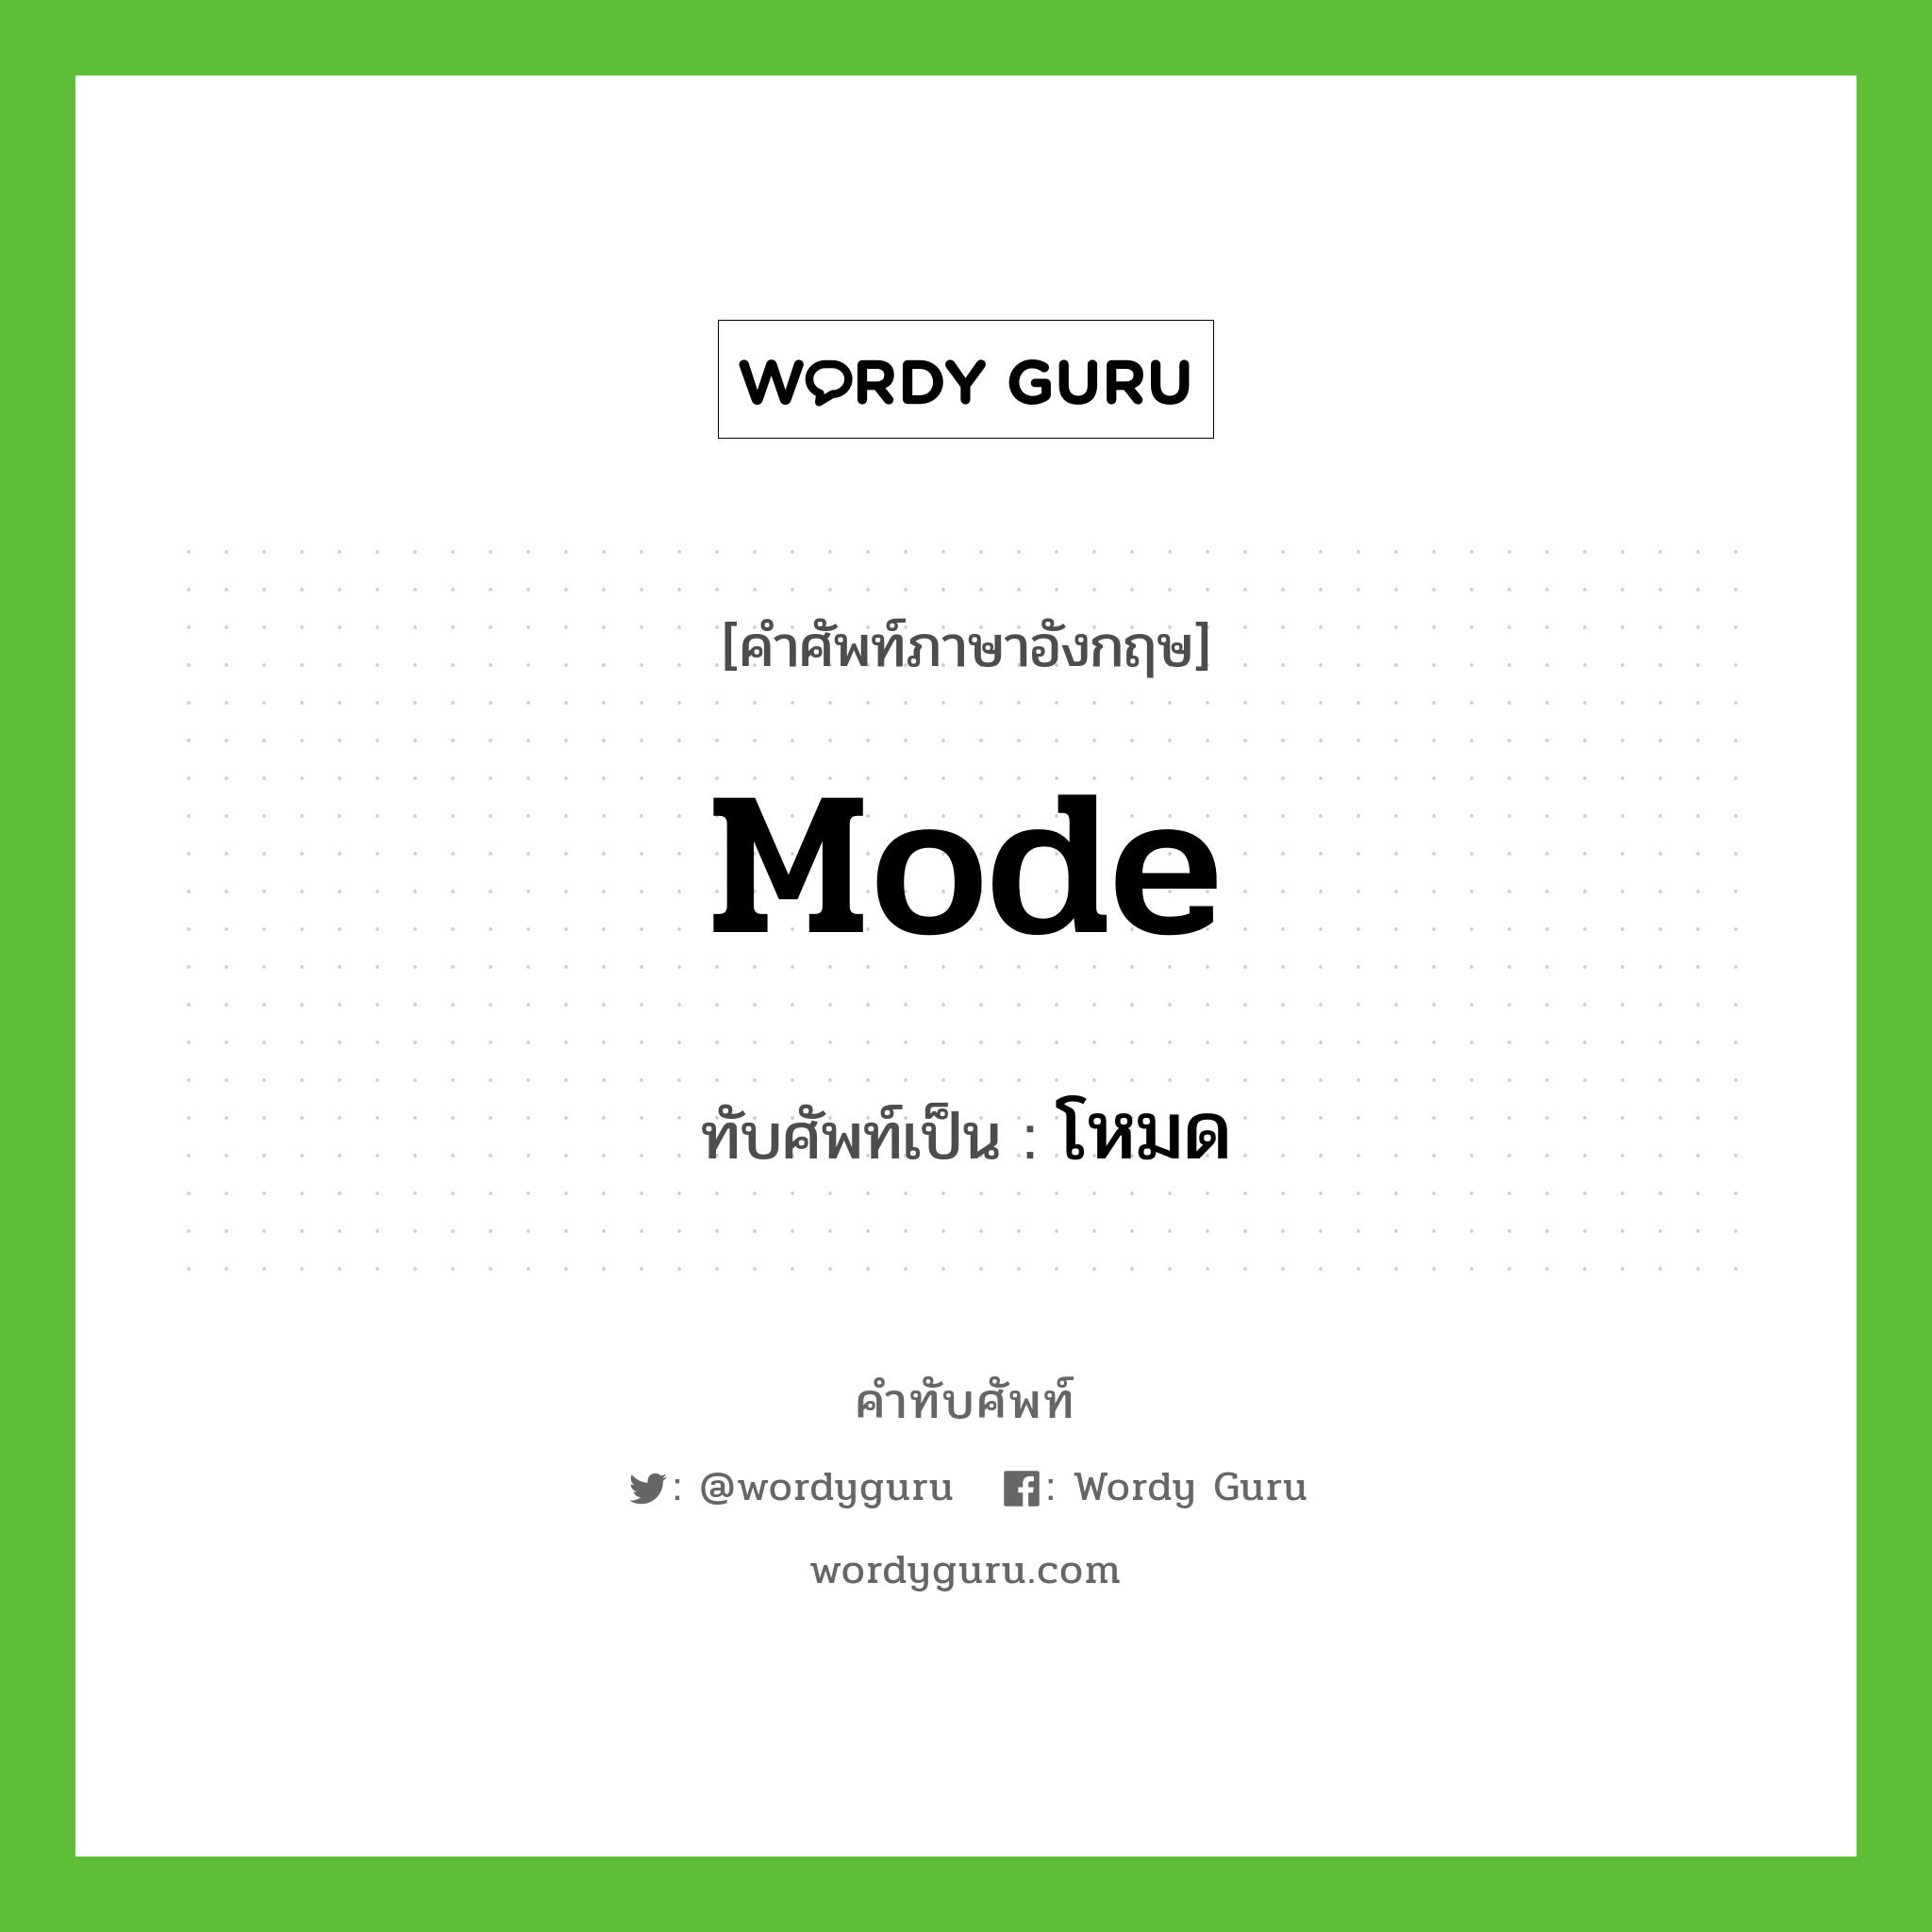 mode เขียนเป็นคำไทยว่าอะไร?, คำศัพท์ภาษาอังกฤษ mode ทับศัพท์เป็น โหมด